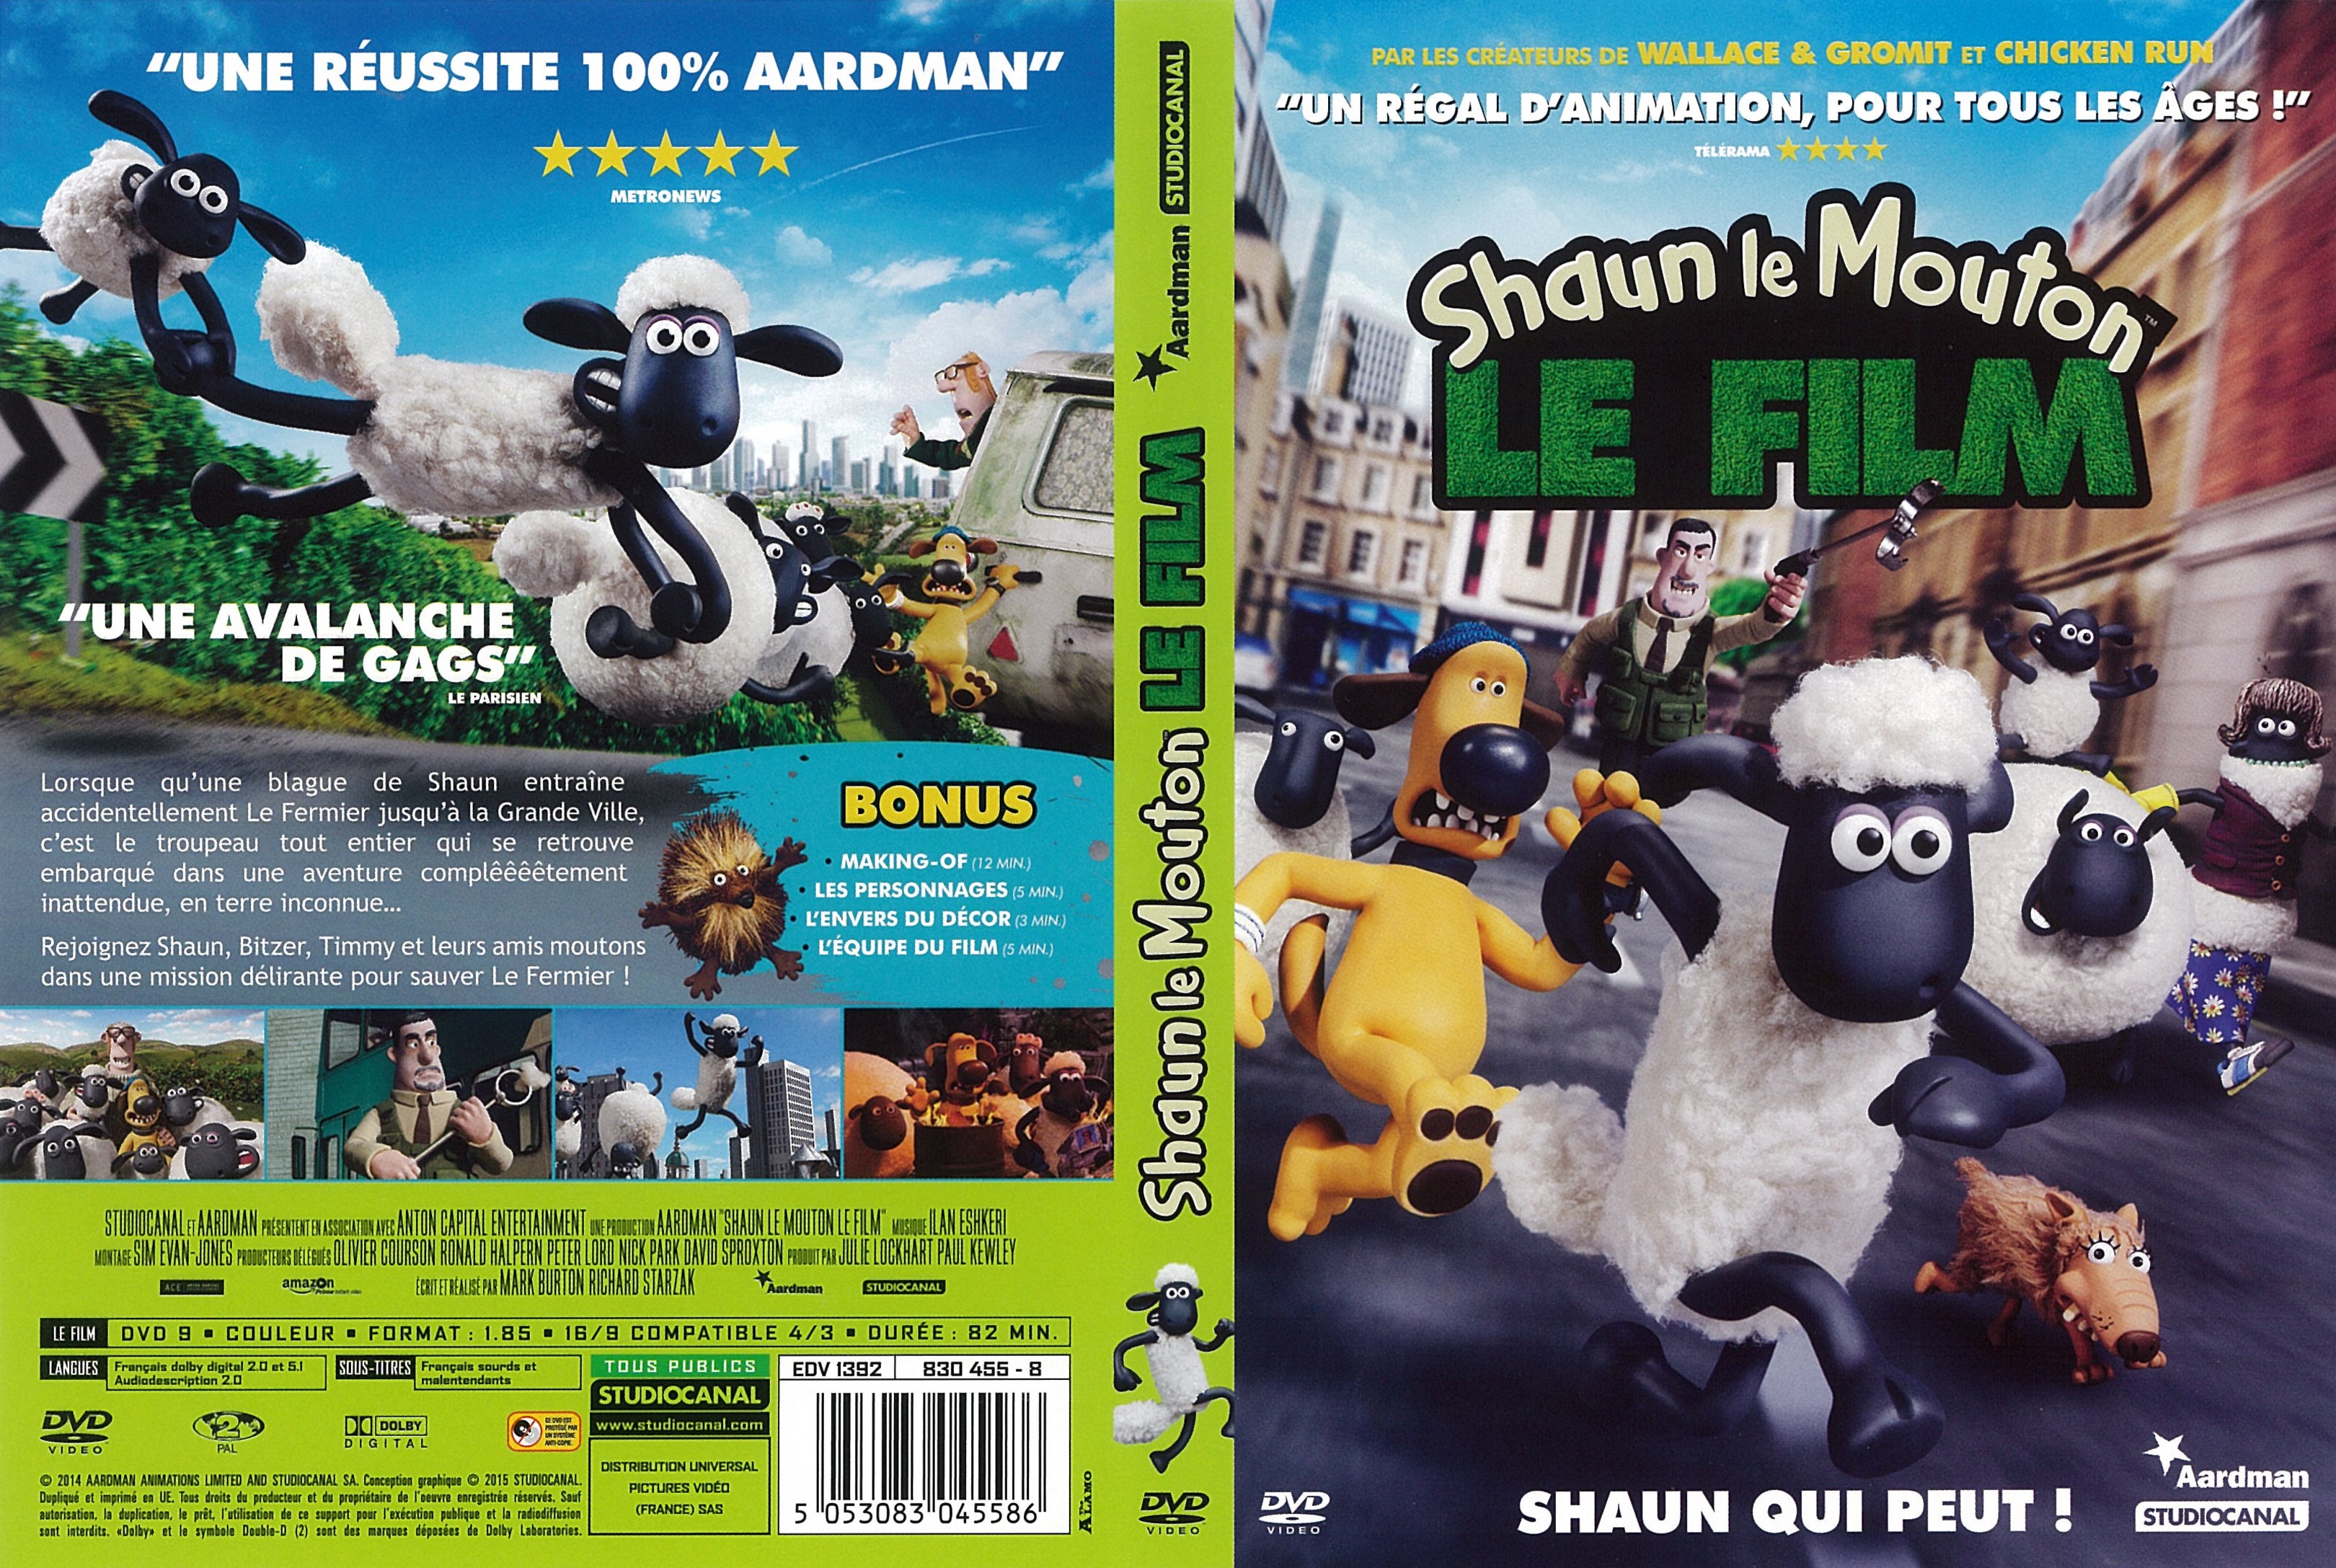 Jaquette DVD Shaun le mouton